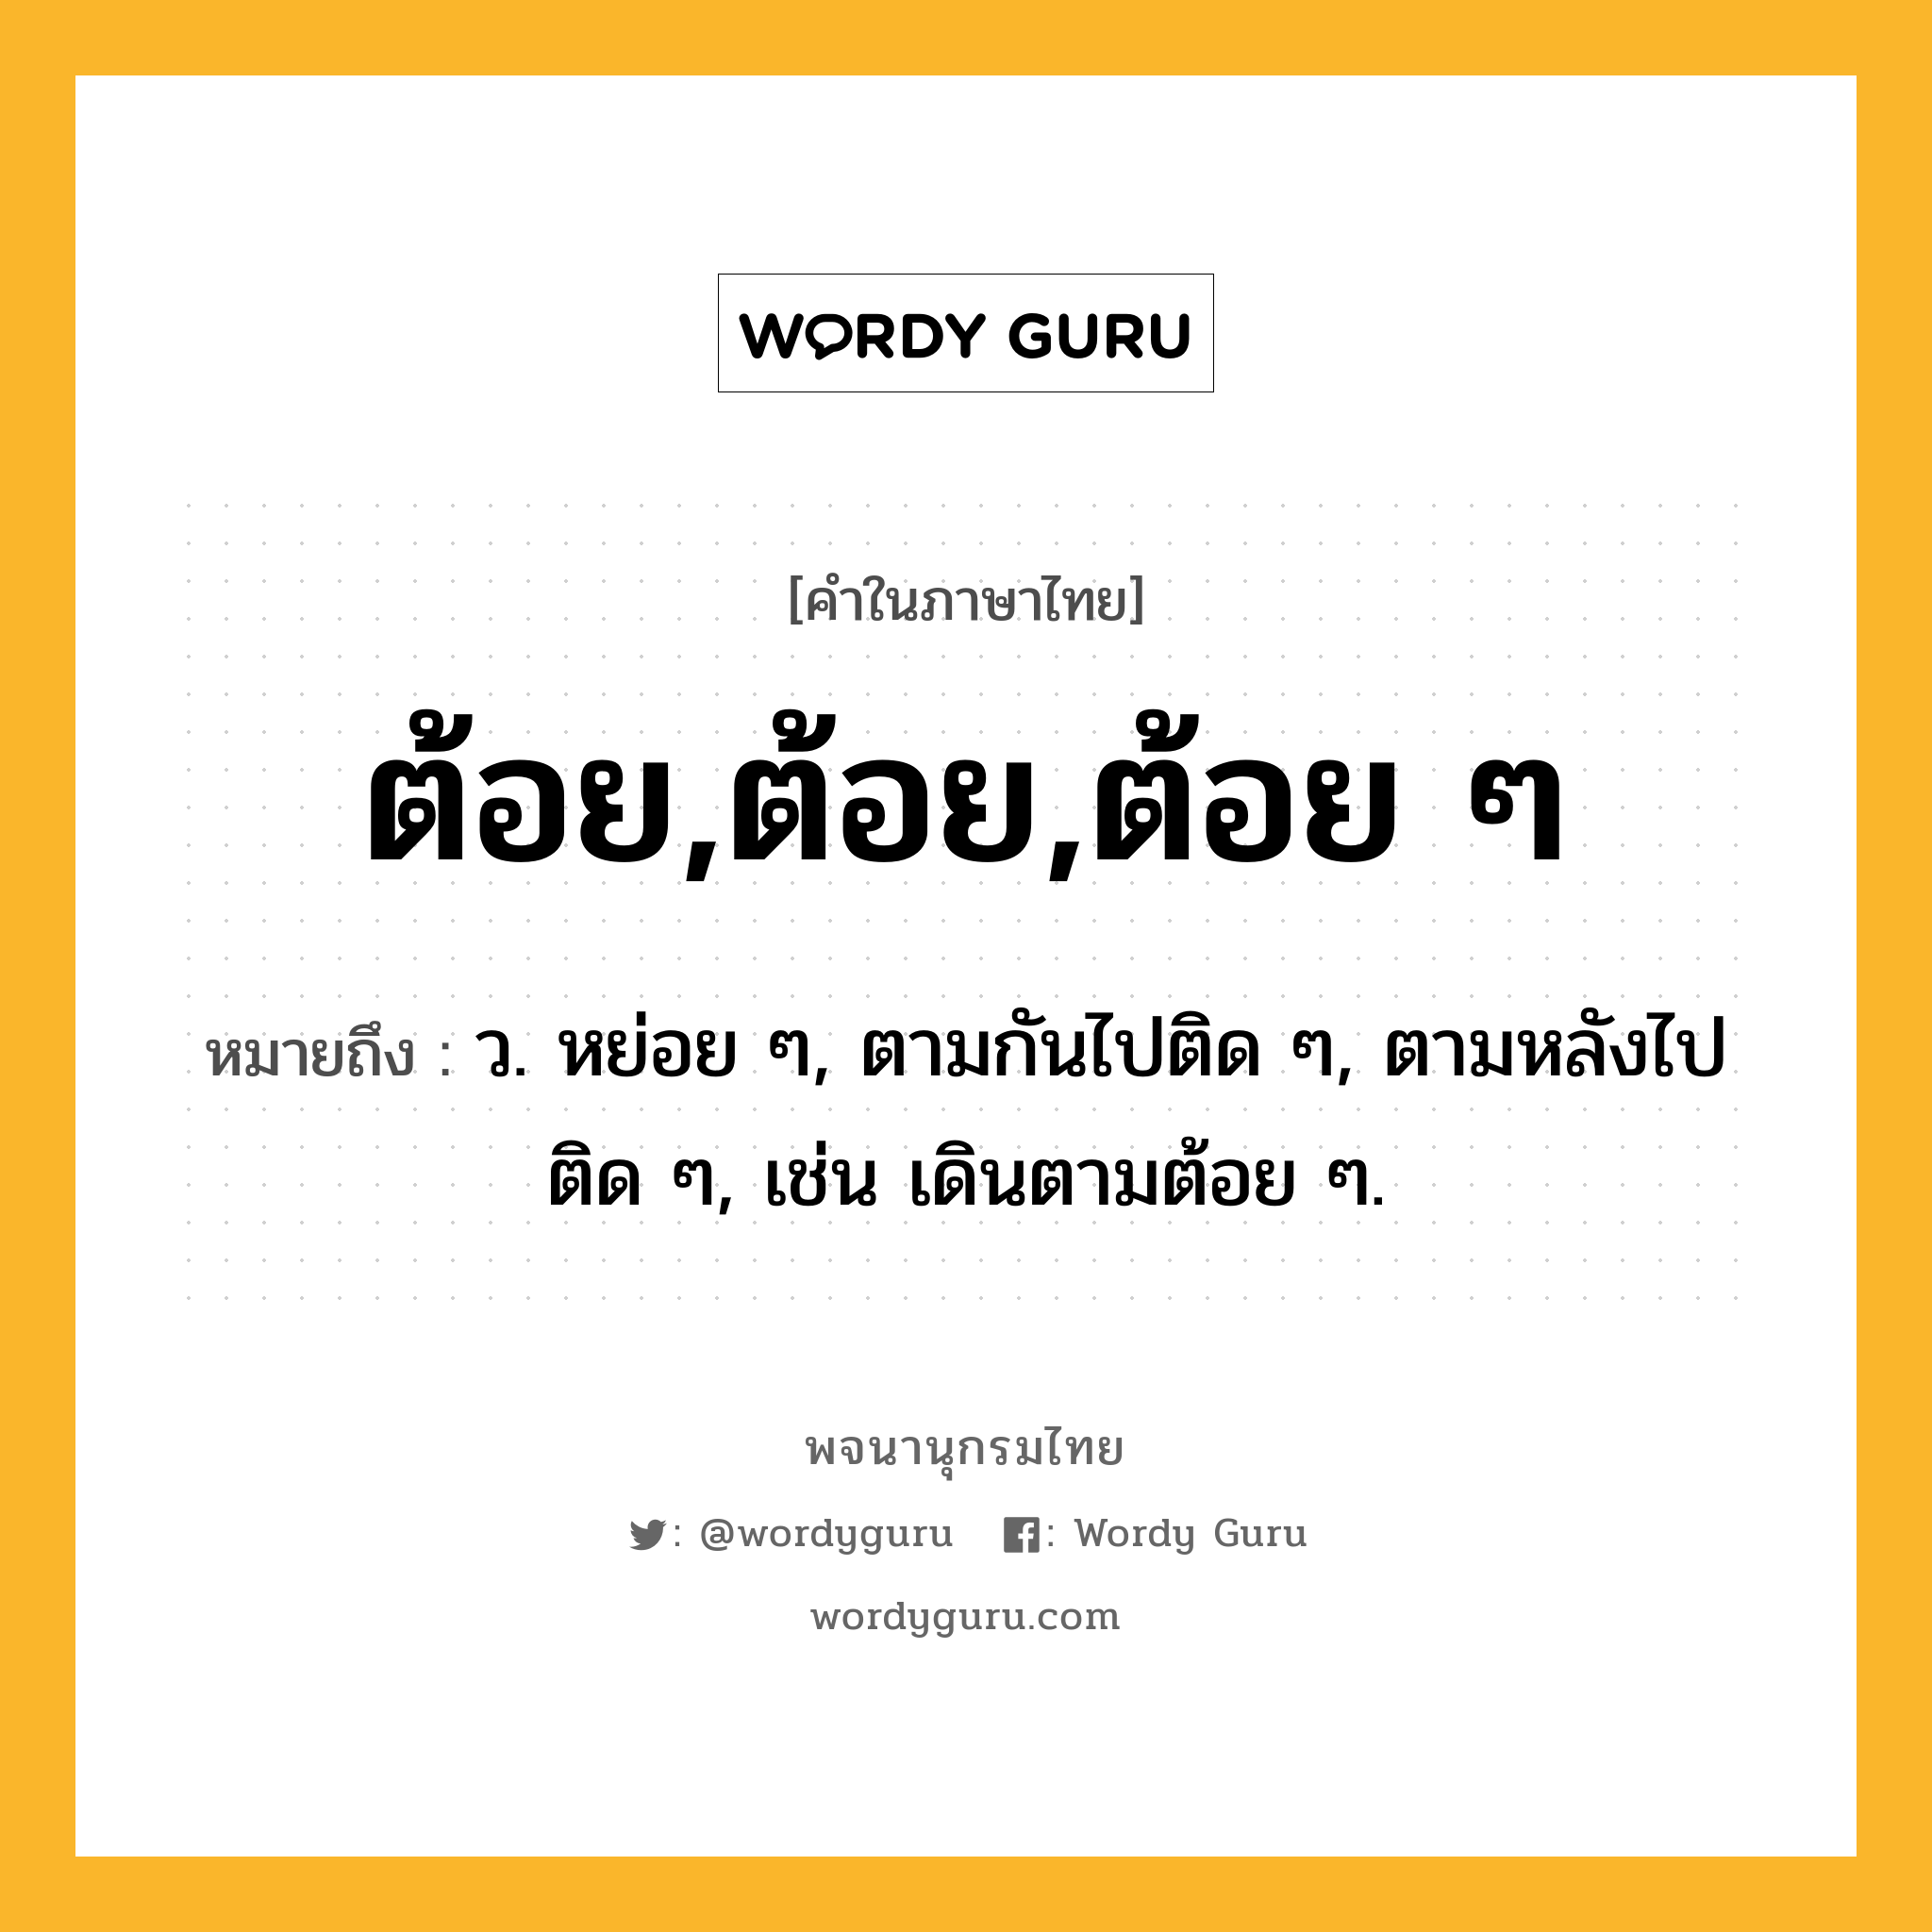 ต้อย,ต้อย,ต้อย ๆ ความหมาย หมายถึงอะไร?, คำในภาษาไทย ต้อย,ต้อย,ต้อย ๆ หมายถึง ว. หย่อย ๆ, ตามกันไปติด ๆ, ตามหลังไปติด ๆ, เช่น เดินตามต้อย ๆ.